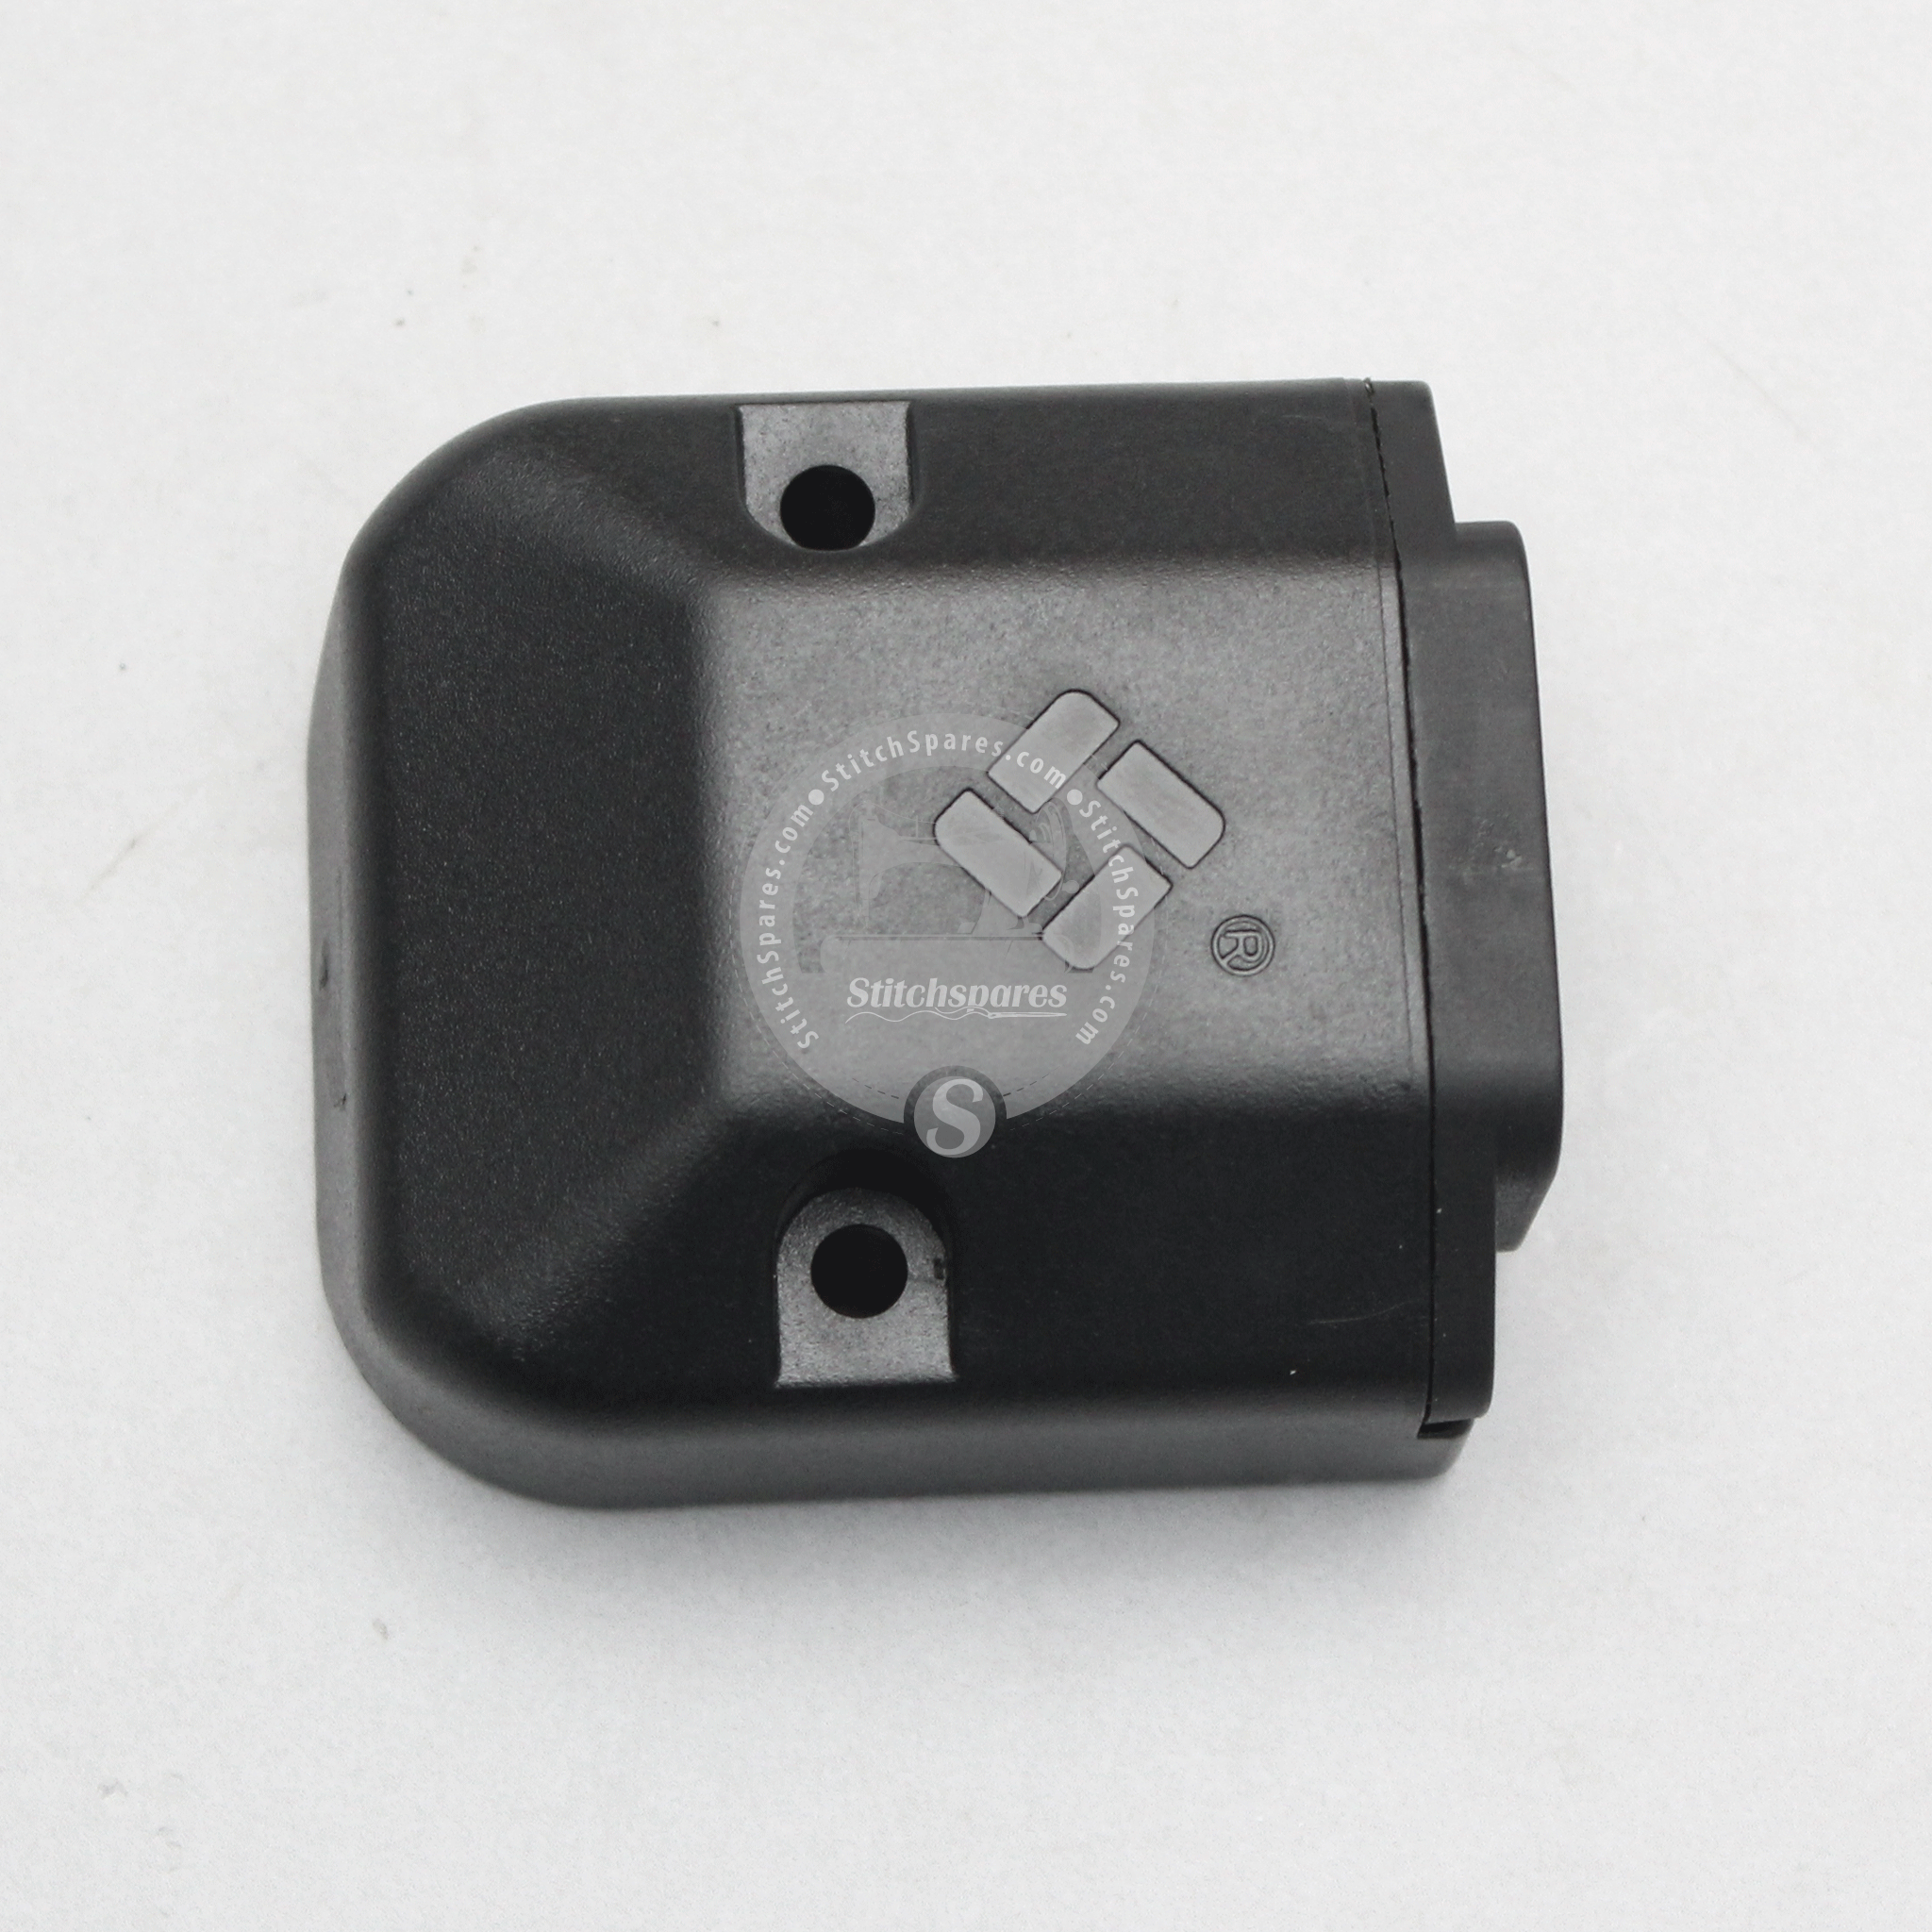 लेजियांग वाईजे-110एमएम (लेजियांग मूल) गोल कपड़ा काटने की मशीन के लिए प्लग सेट